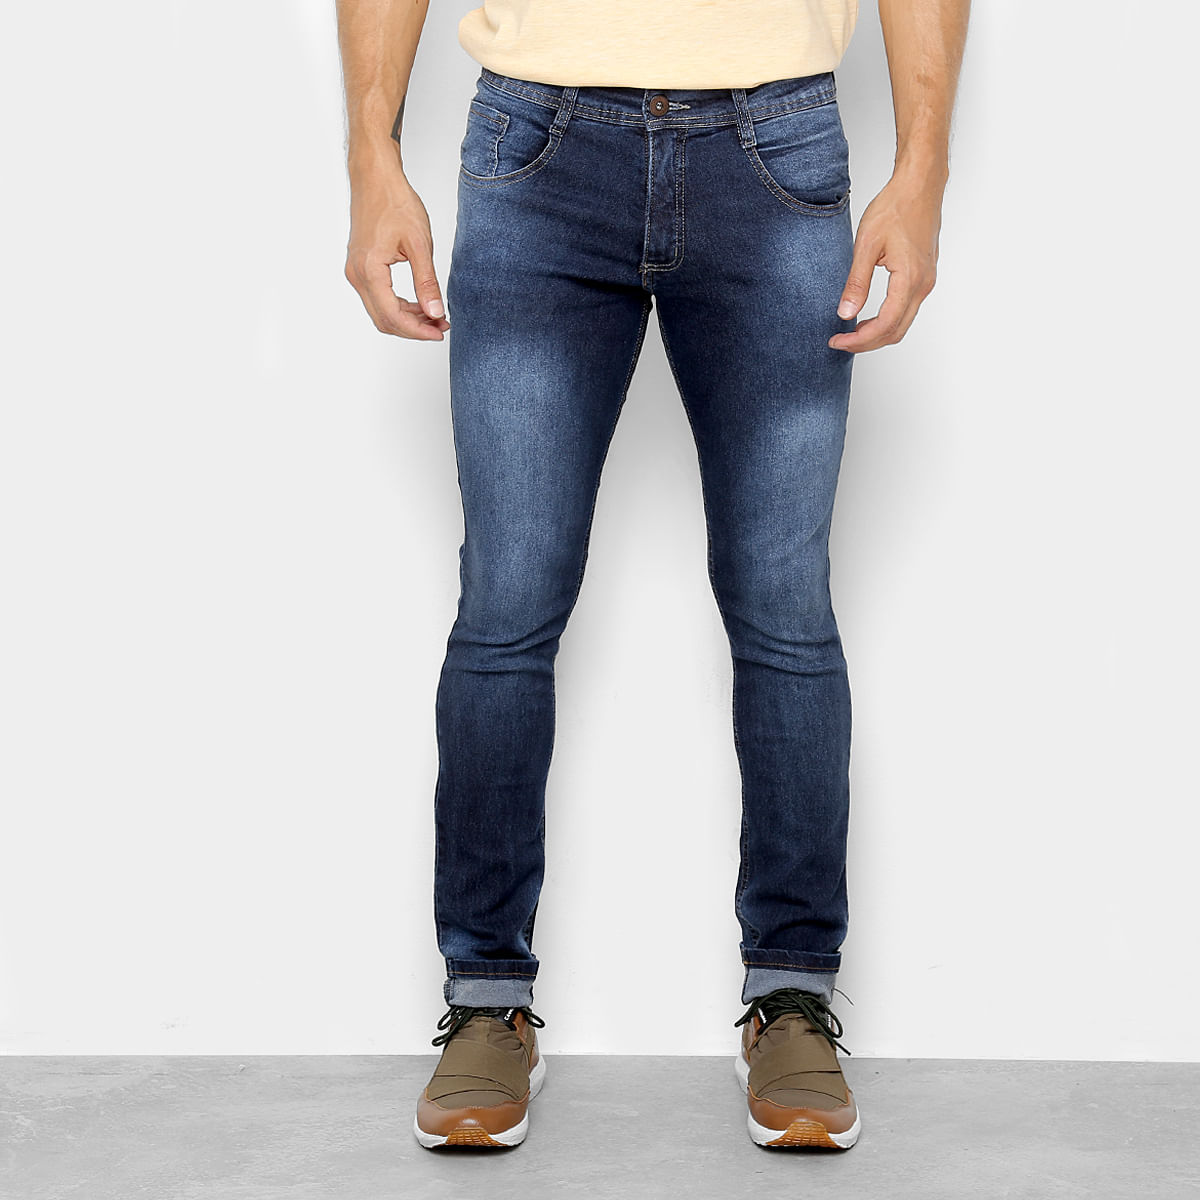 jeans biotipo masculino